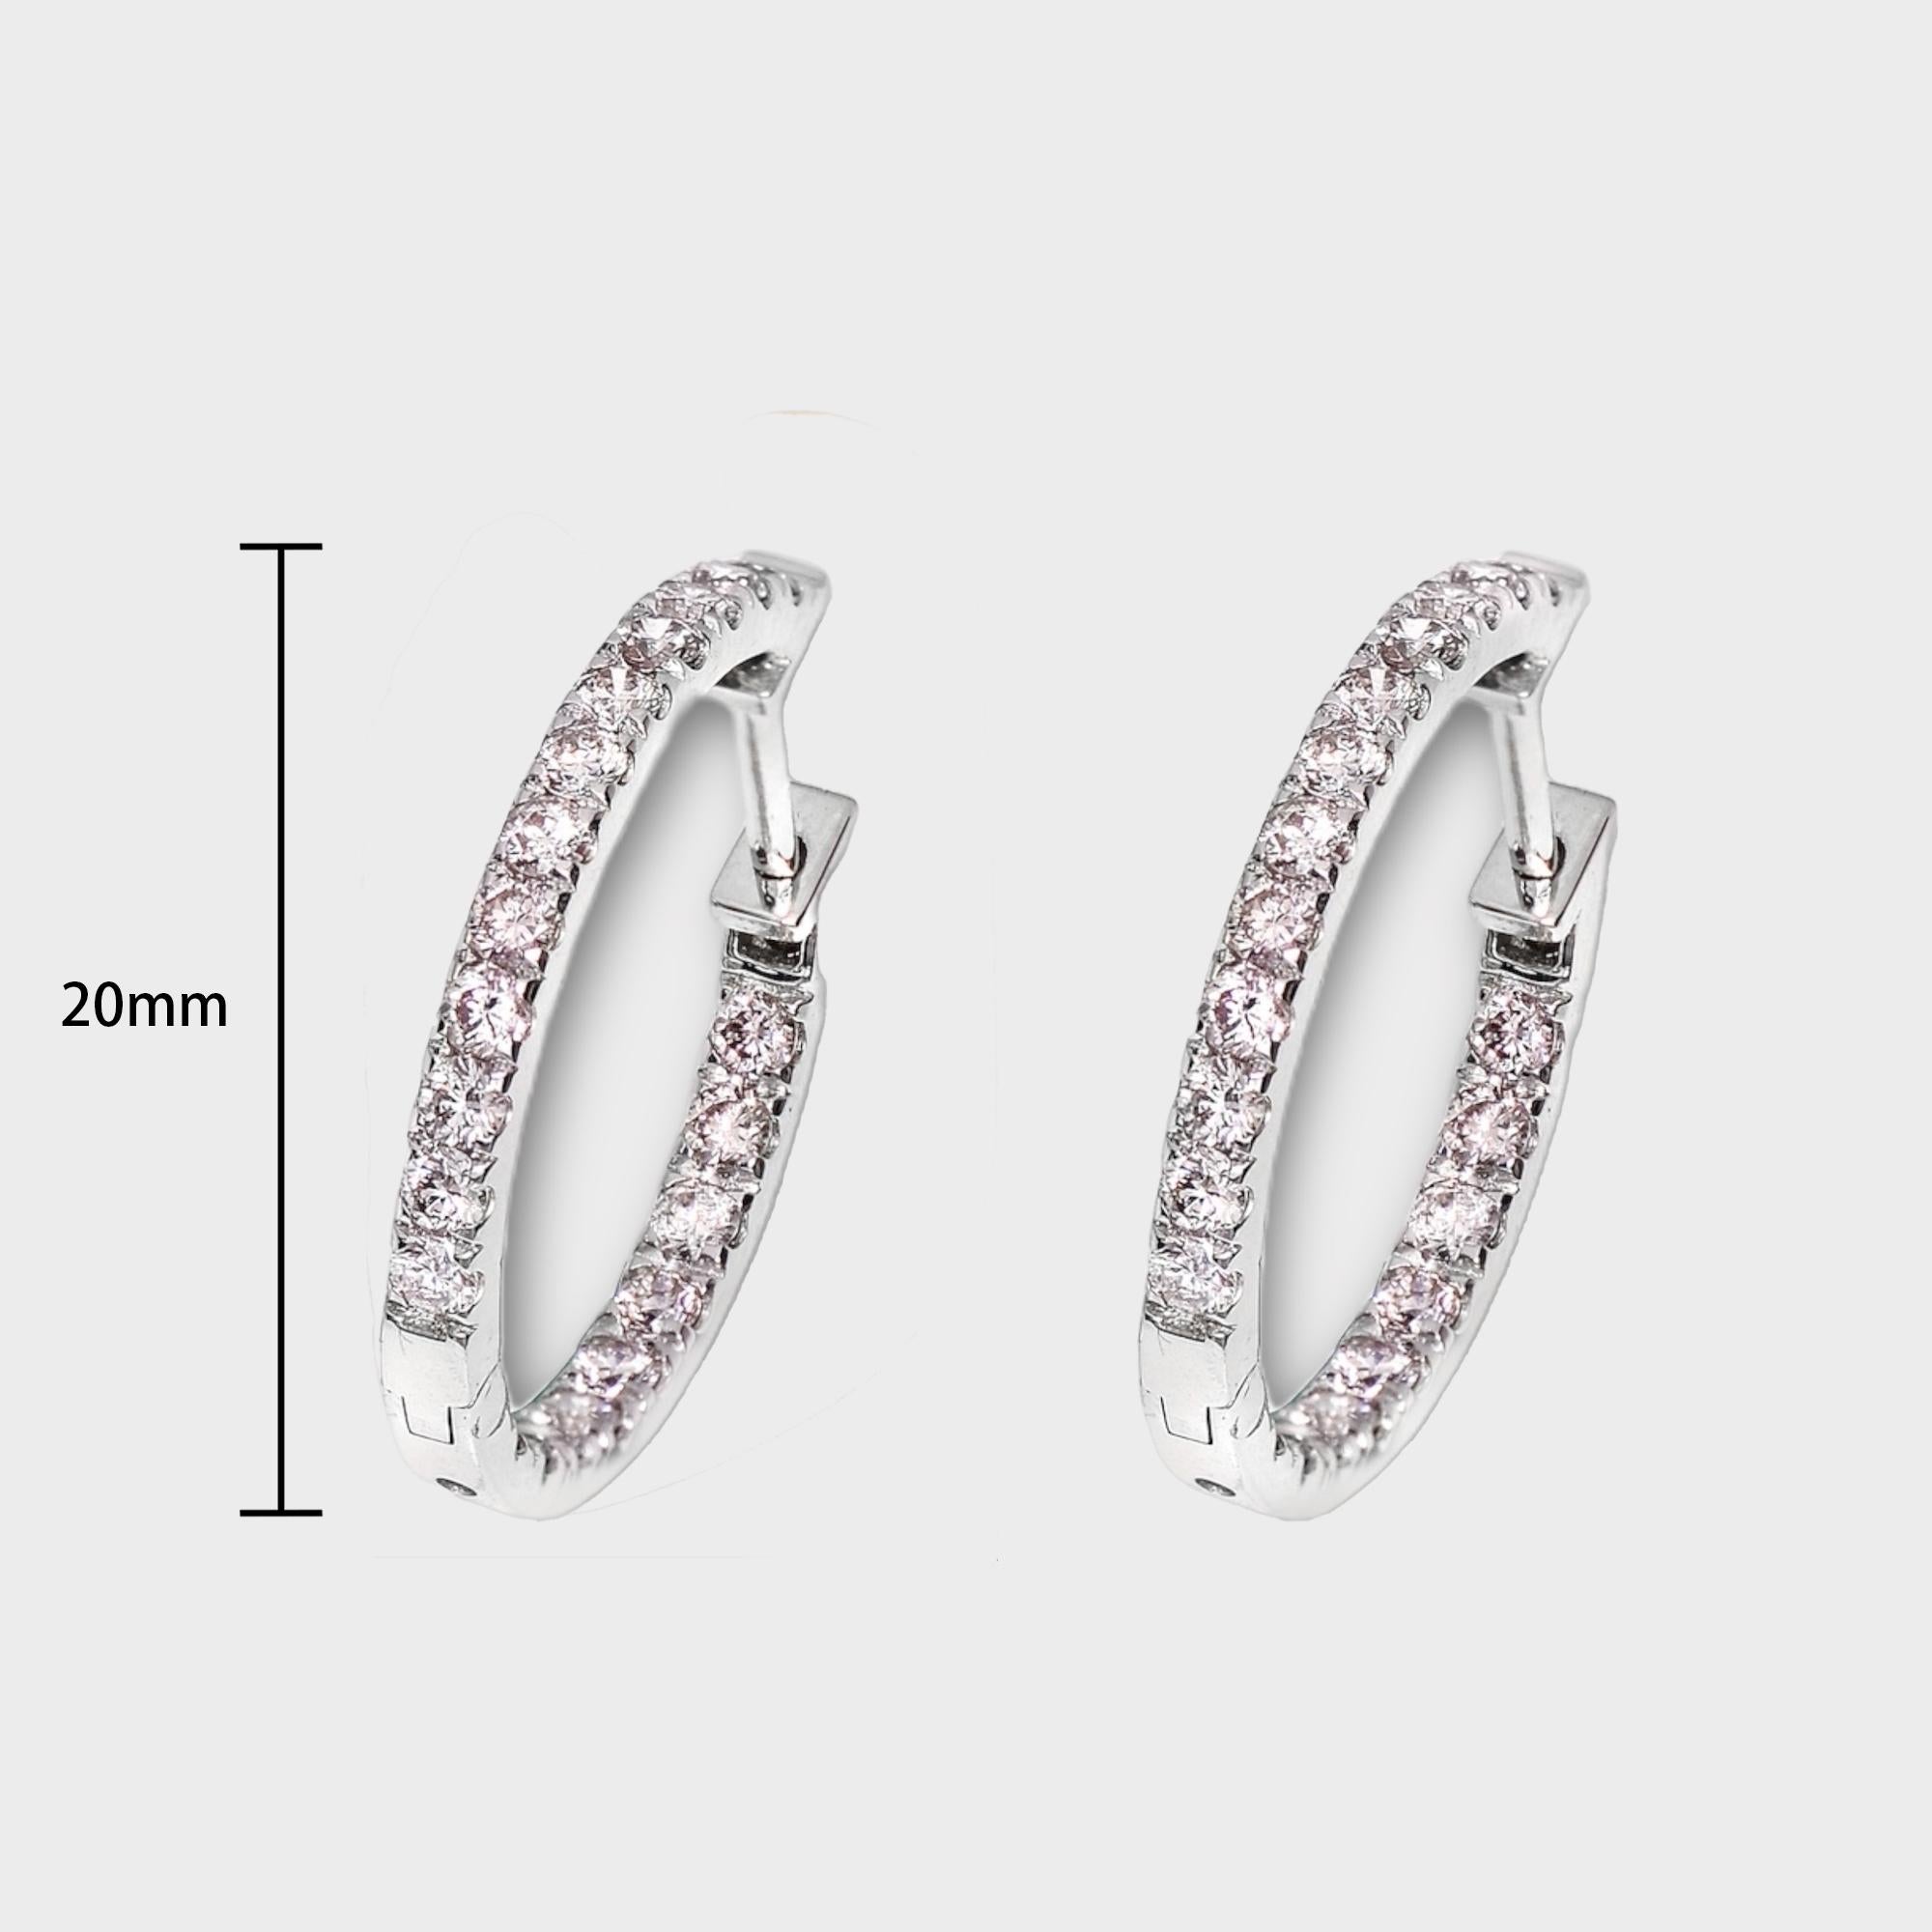 *IGI 14K 0.98 ct Natürliche Rosa Diamanten Hoop Ohrringe*

Mit 42 runden, natürlichen, rosafarbenen Diamanten mit einem Gewicht von 0,98 Karat besetzt, die in ein Band mit Zackenfassung aus 14 Karat Weißgold montiert sind.

Mit IGI-Bericht Nr.